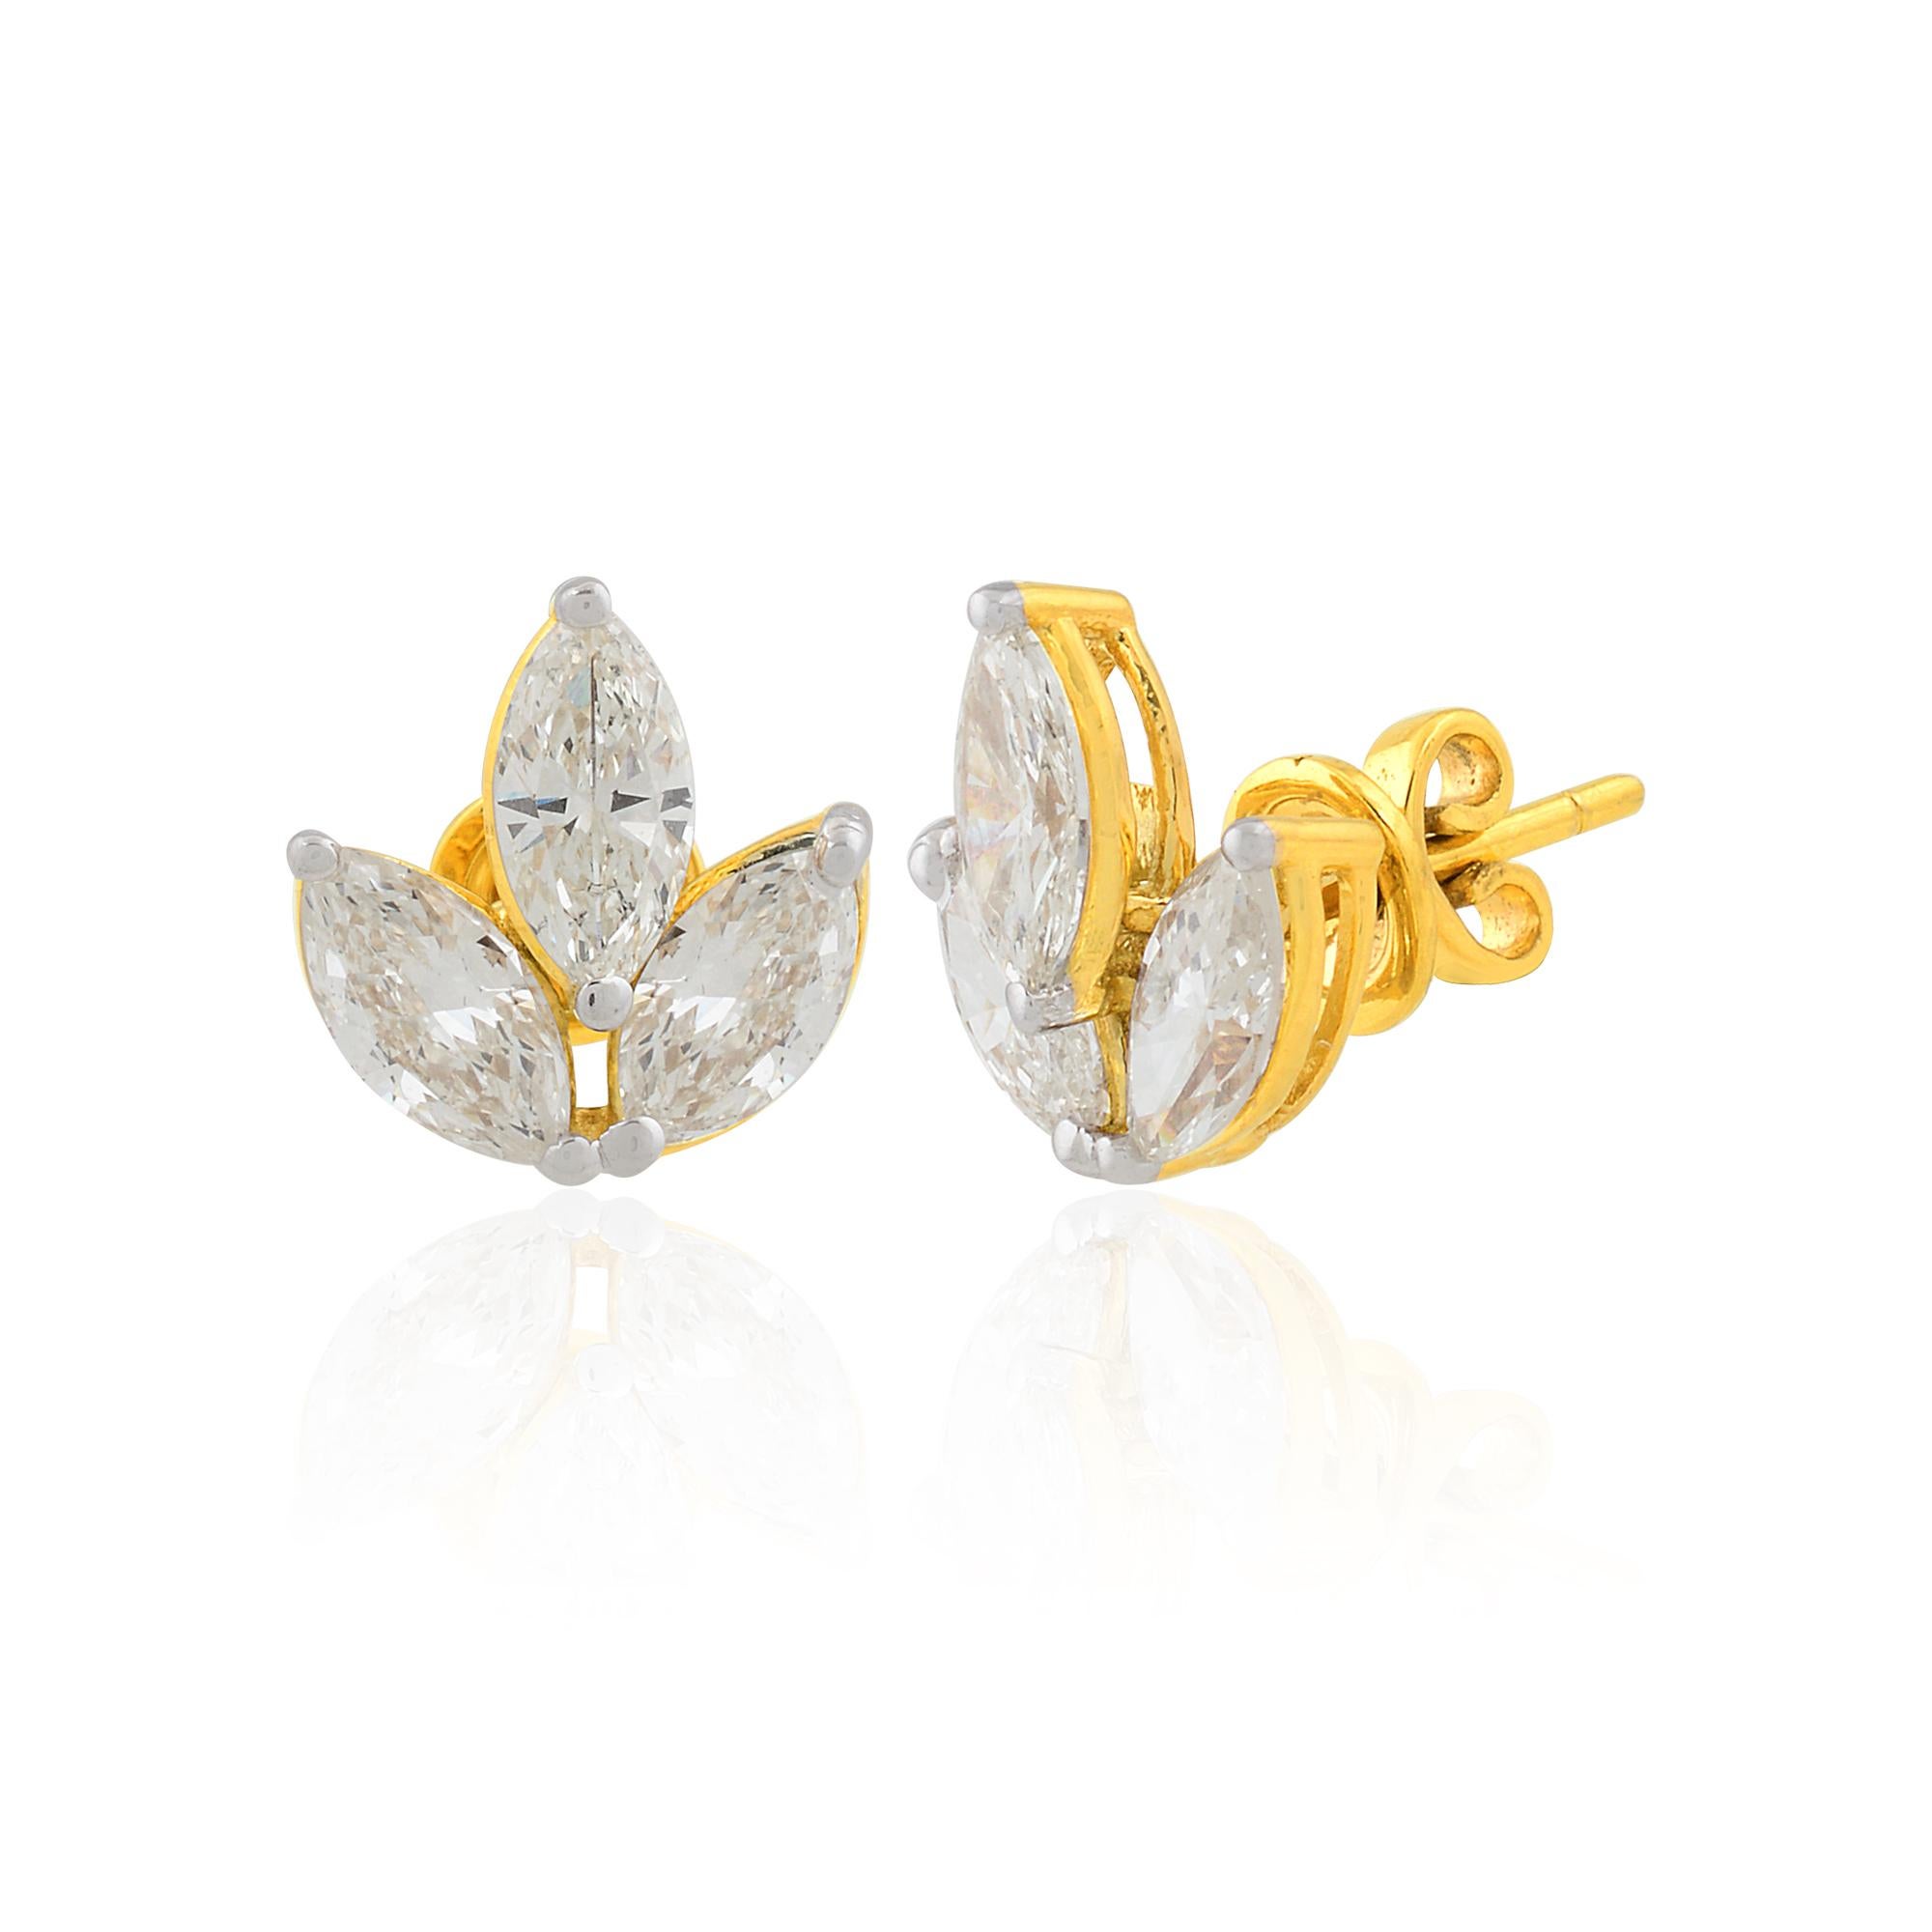 Die mit Präzision und Liebe zum Detail gefertigten Ohrringe sind aus glänzendem 14-karätigem Gelbgold gefertigt, das dem Design einen warmen und strahlenden Glanz verleiht. Die Fassung aus Gelbgold bildet den perfekten Hintergrund für die Diamanten,